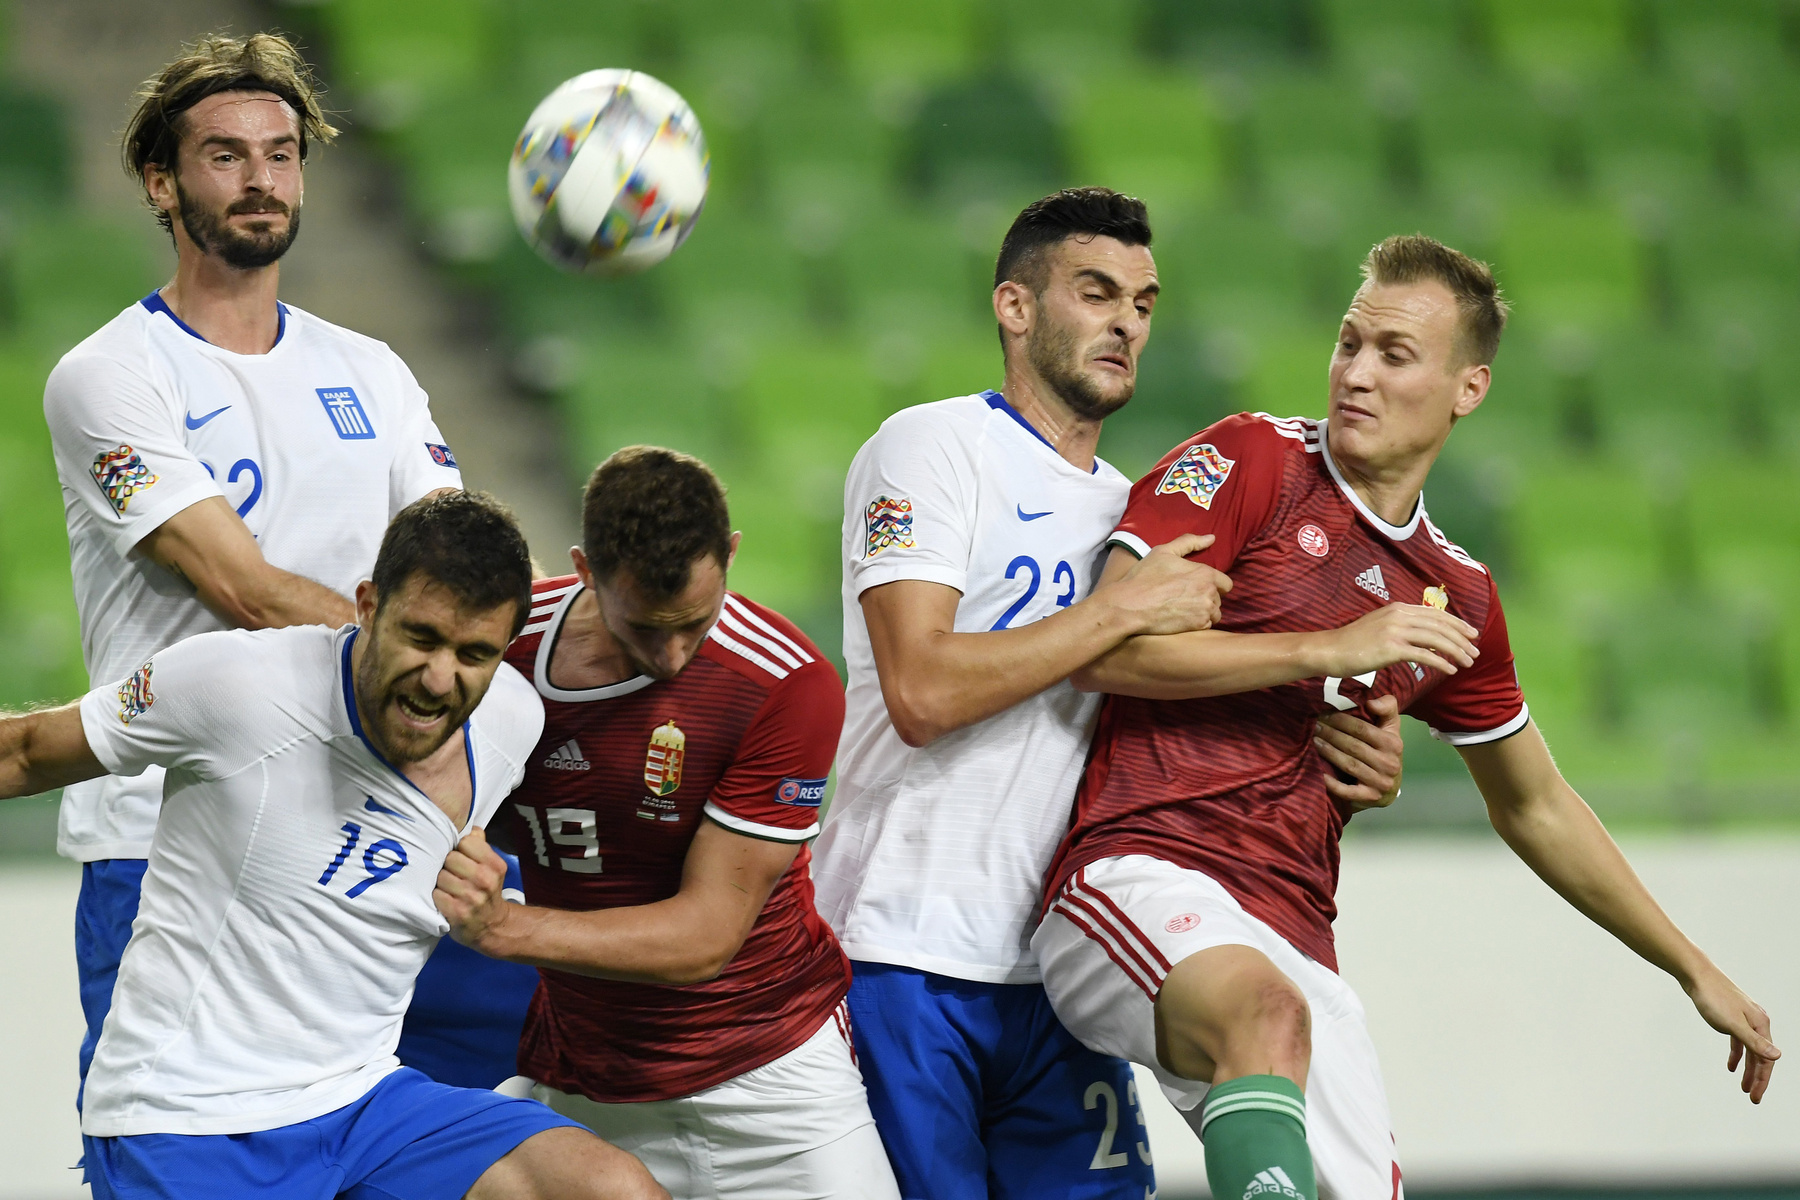 A magyar válogatott örül a győzelemnek a labdarúgó Nemzetek Ligájában játszott Magyarország - Görögország mérkőzés végén a Groupama Arénában 2018. szeptember 11-én. A magyar válogatott 2-1-re győzött.